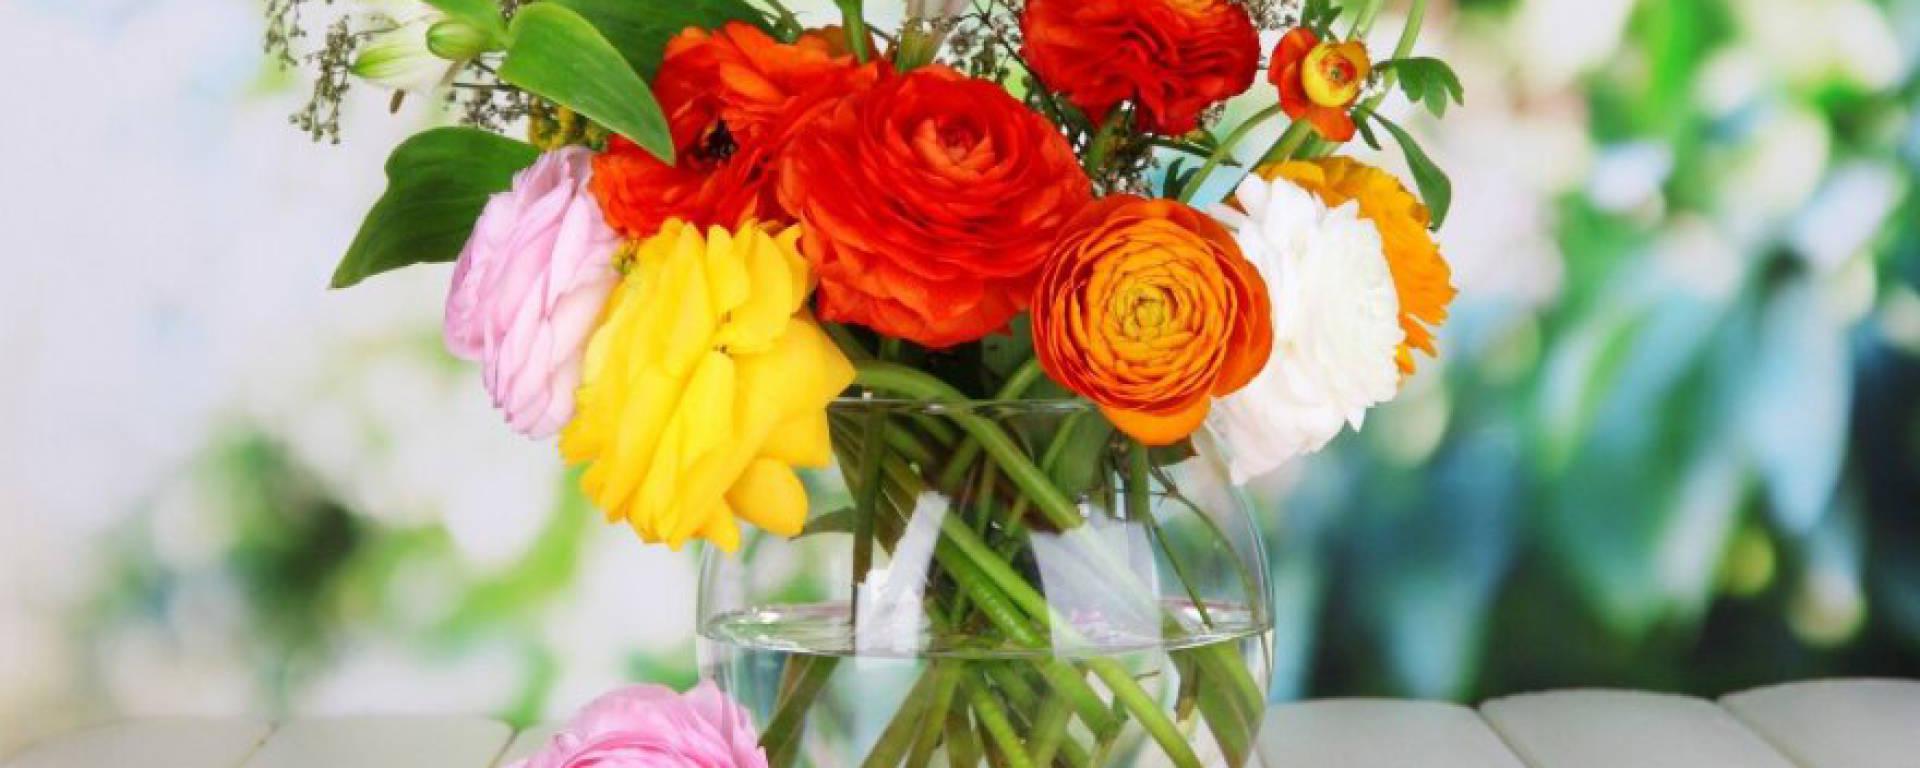 7 lengvi patarimai, kaip prižiūrėti gėlių puokštes